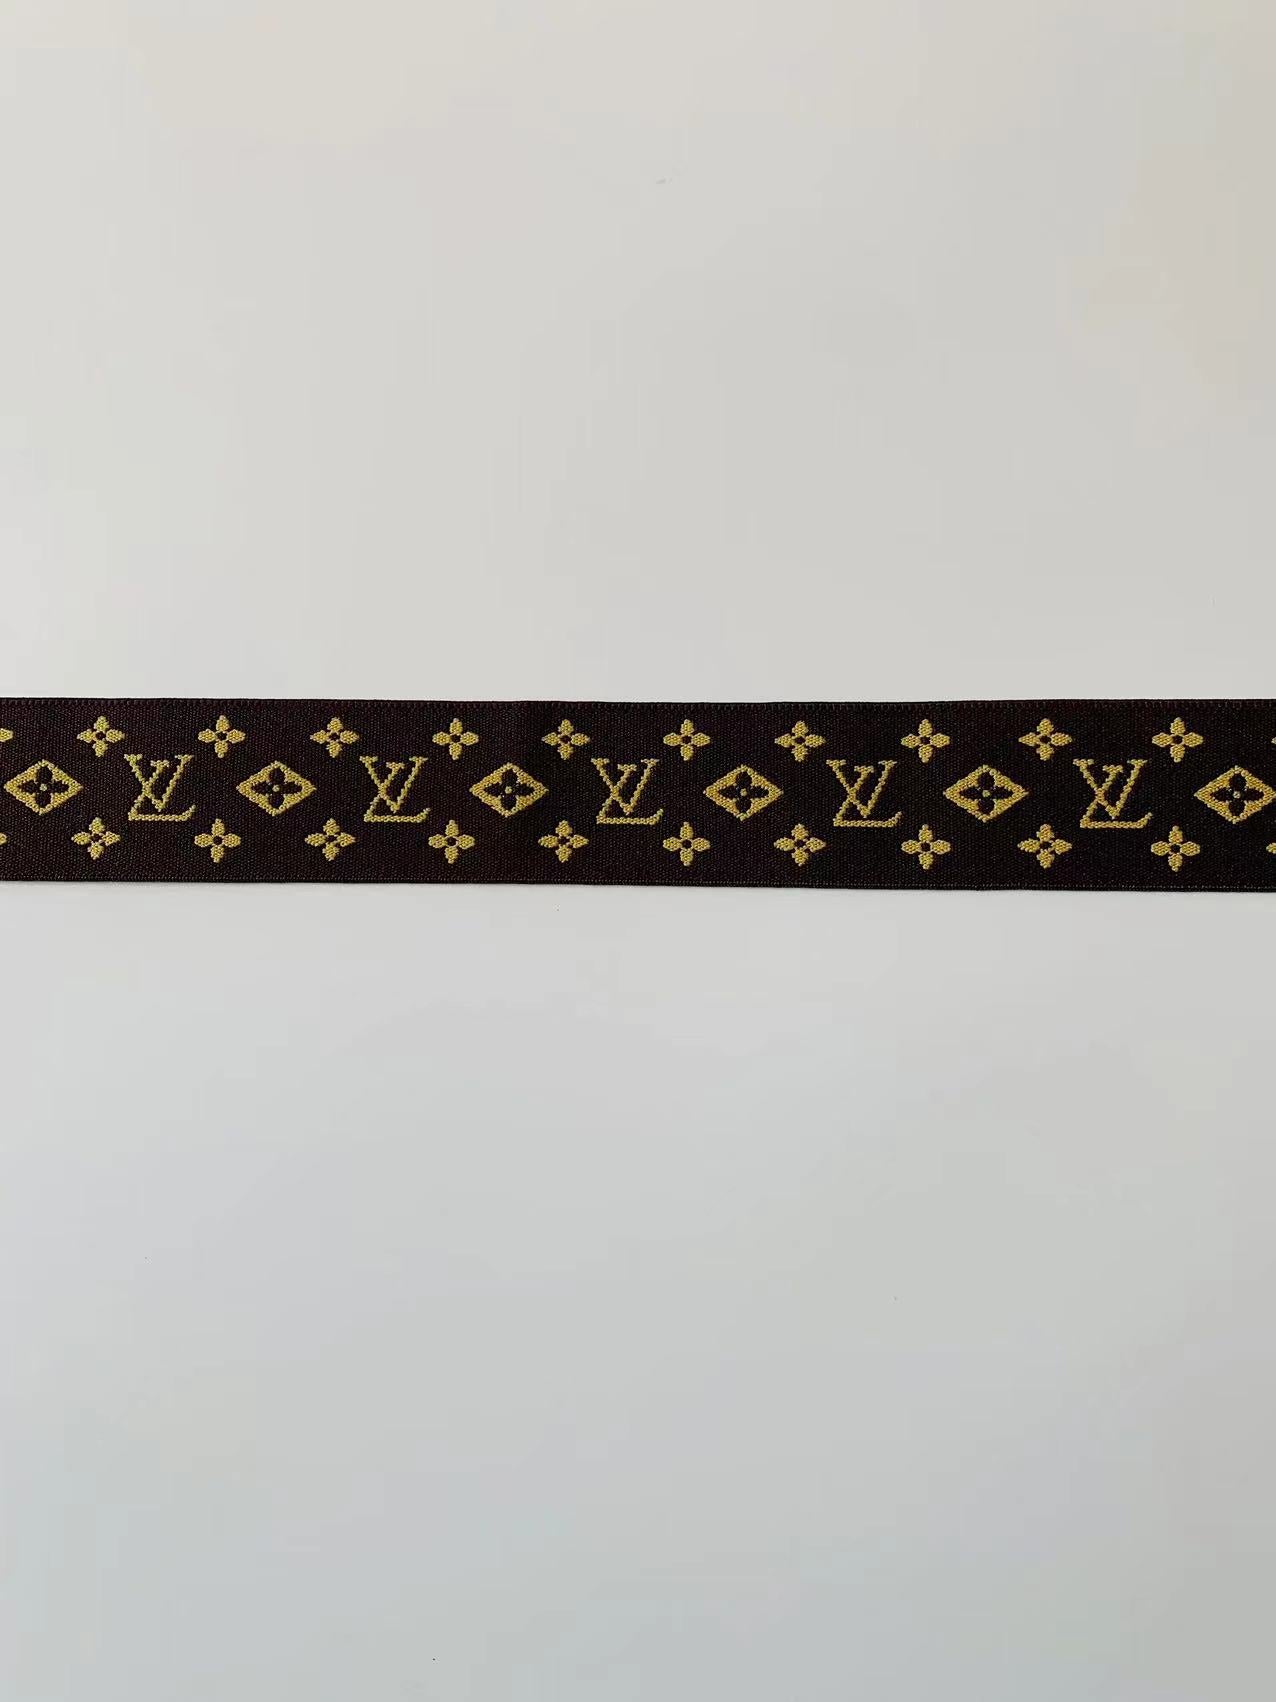 Fashion LV 1.5 inch Elastic Strap ,Handmade Striped Ribbon Trim